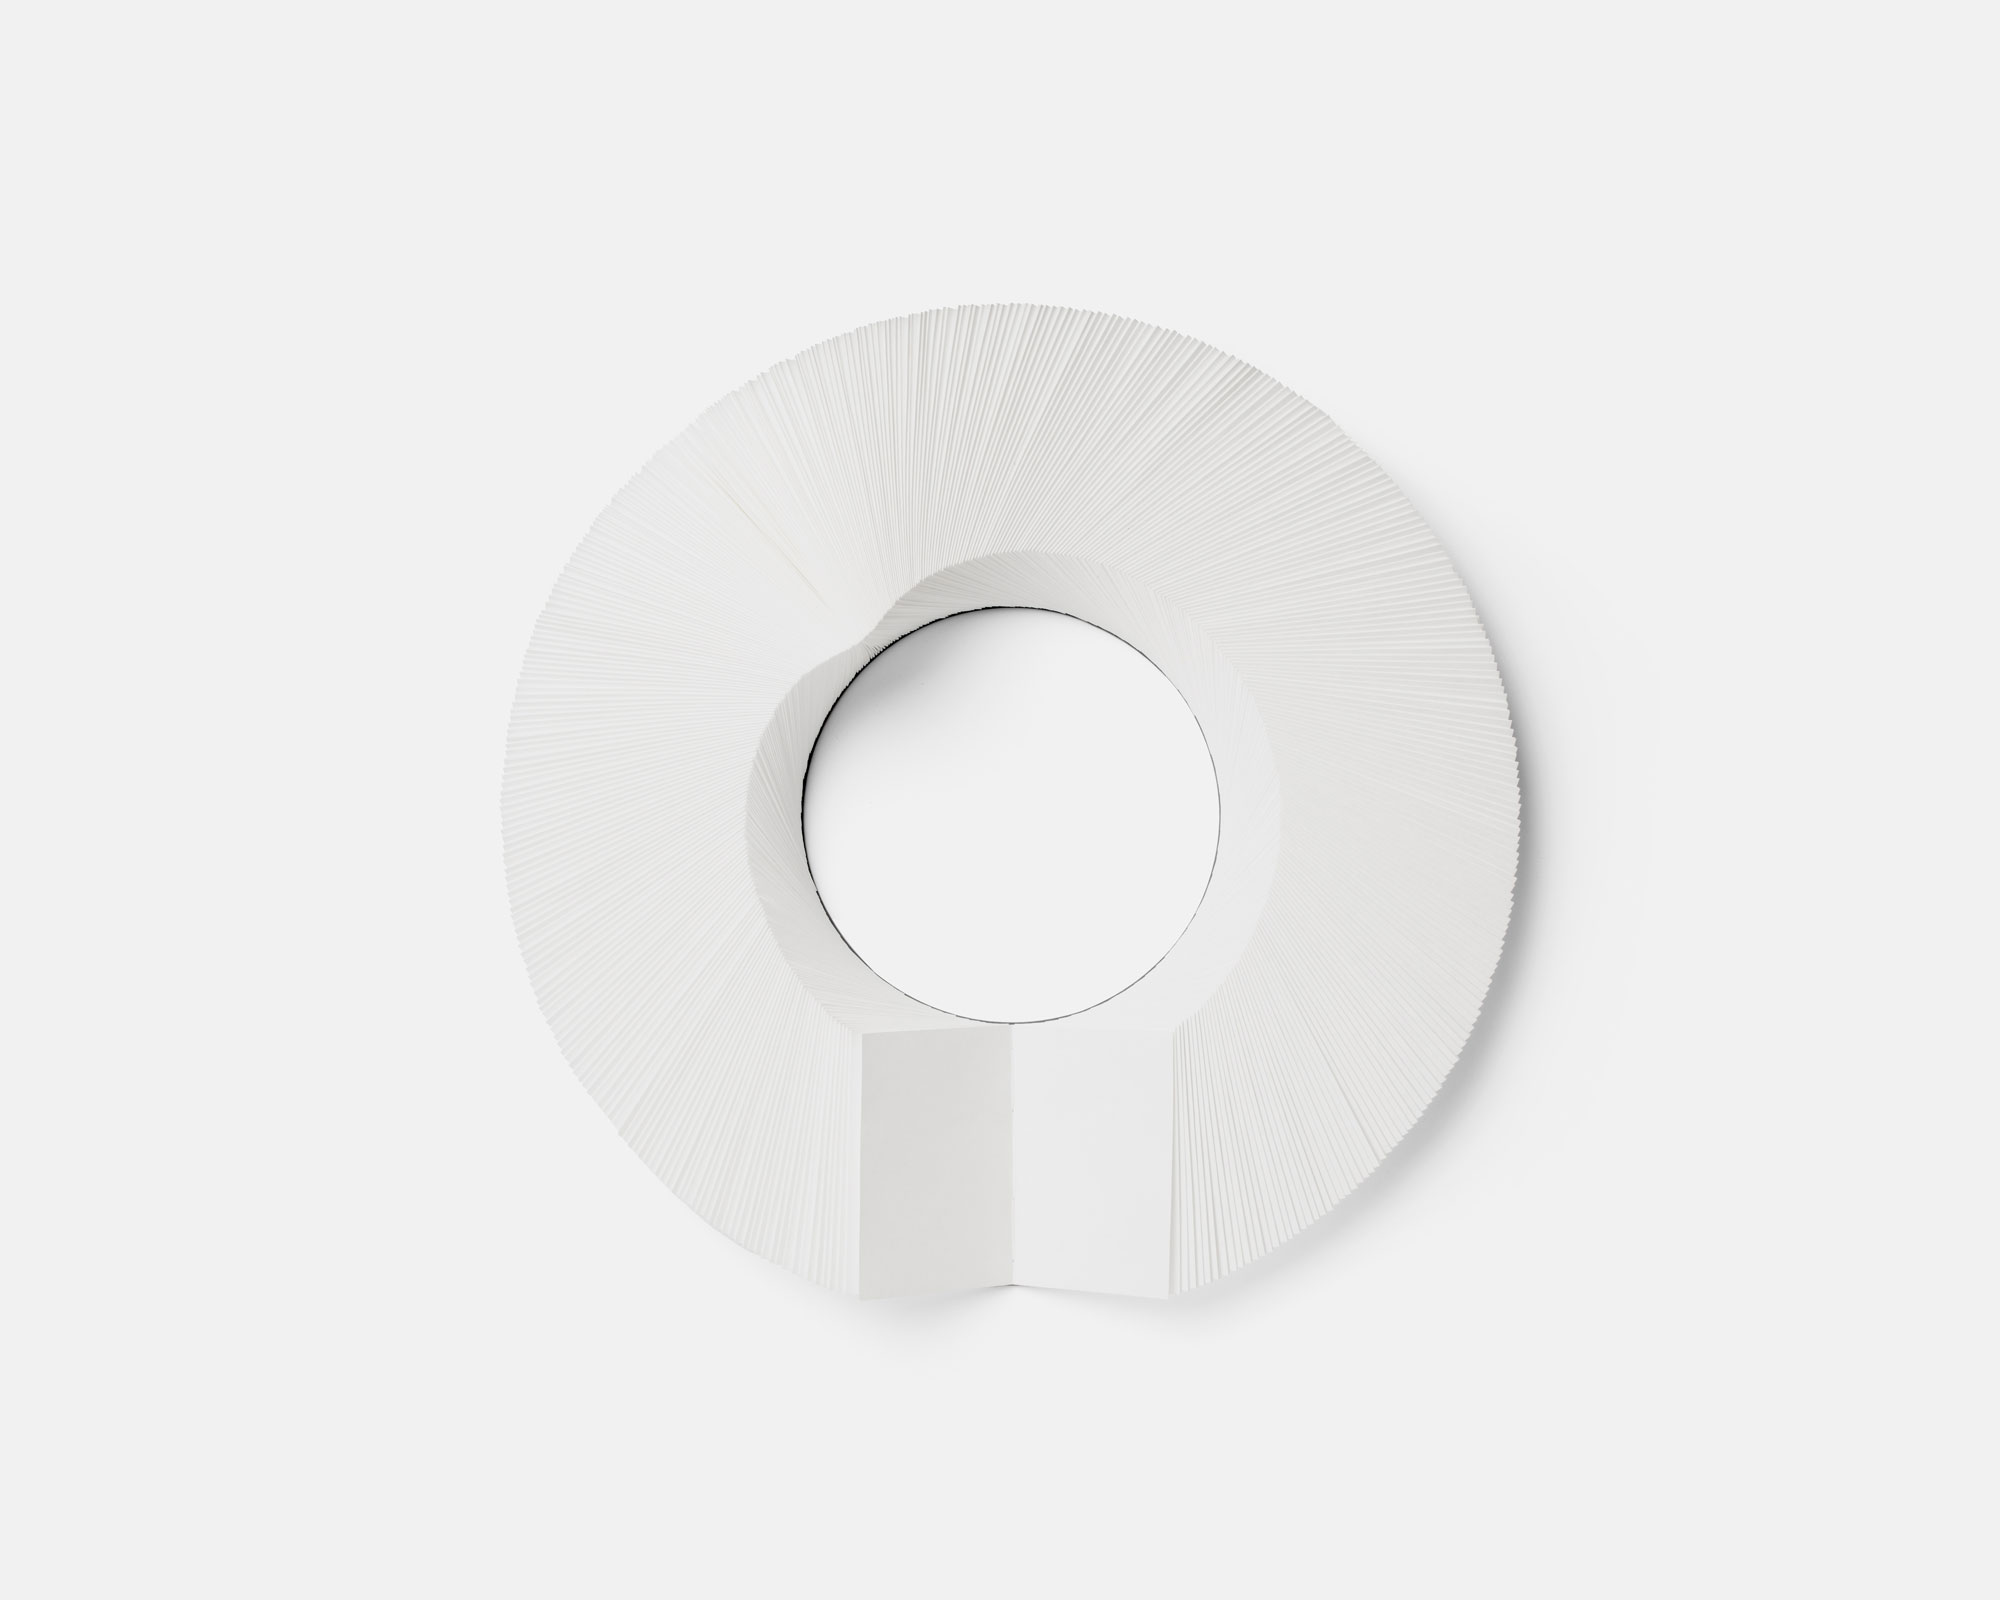 No end - Livre circulaire - Tyvek, carton, fil - Assemblage de pages par couture sur un disque de carton - Ø 42 cm - 2023 - Photo : Andy Simon